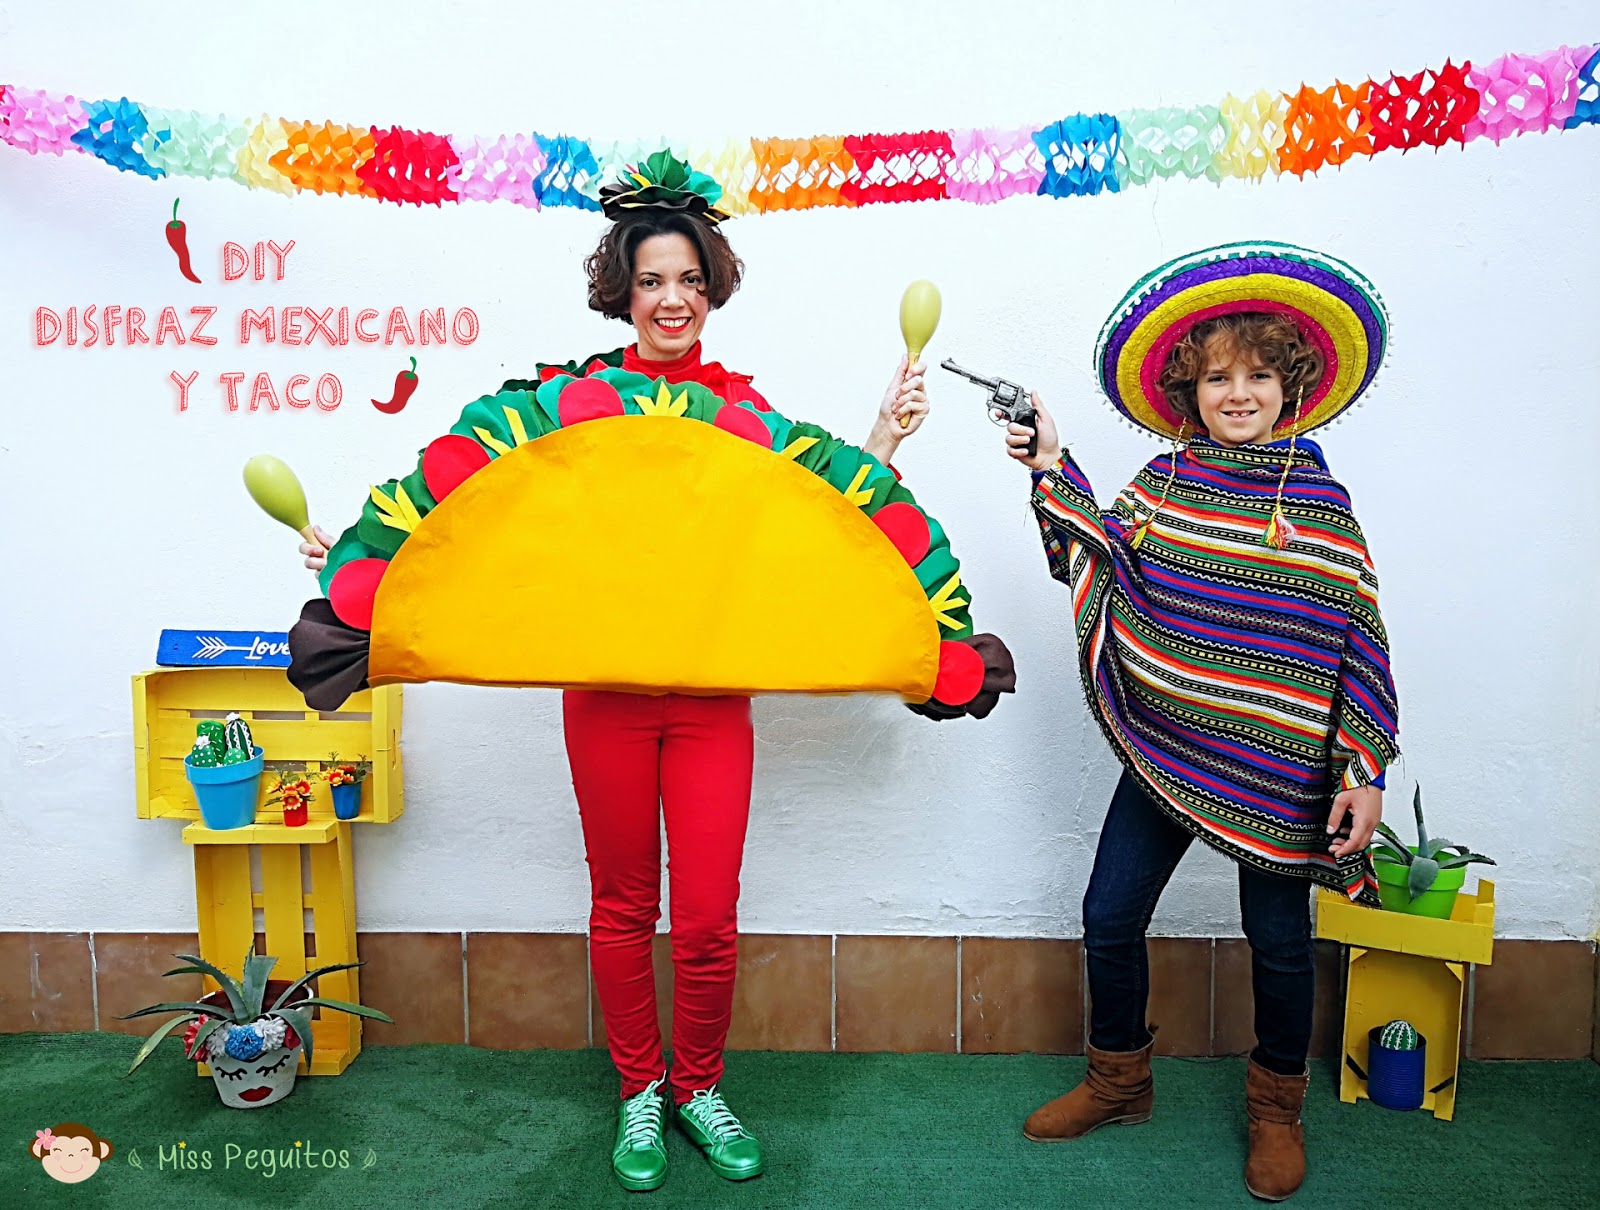 Miss Peguitos: blog Eco-Friendly y sostenible con diy, moda, trucos y  consejos: Diy disfraz de mexicano y taco wey